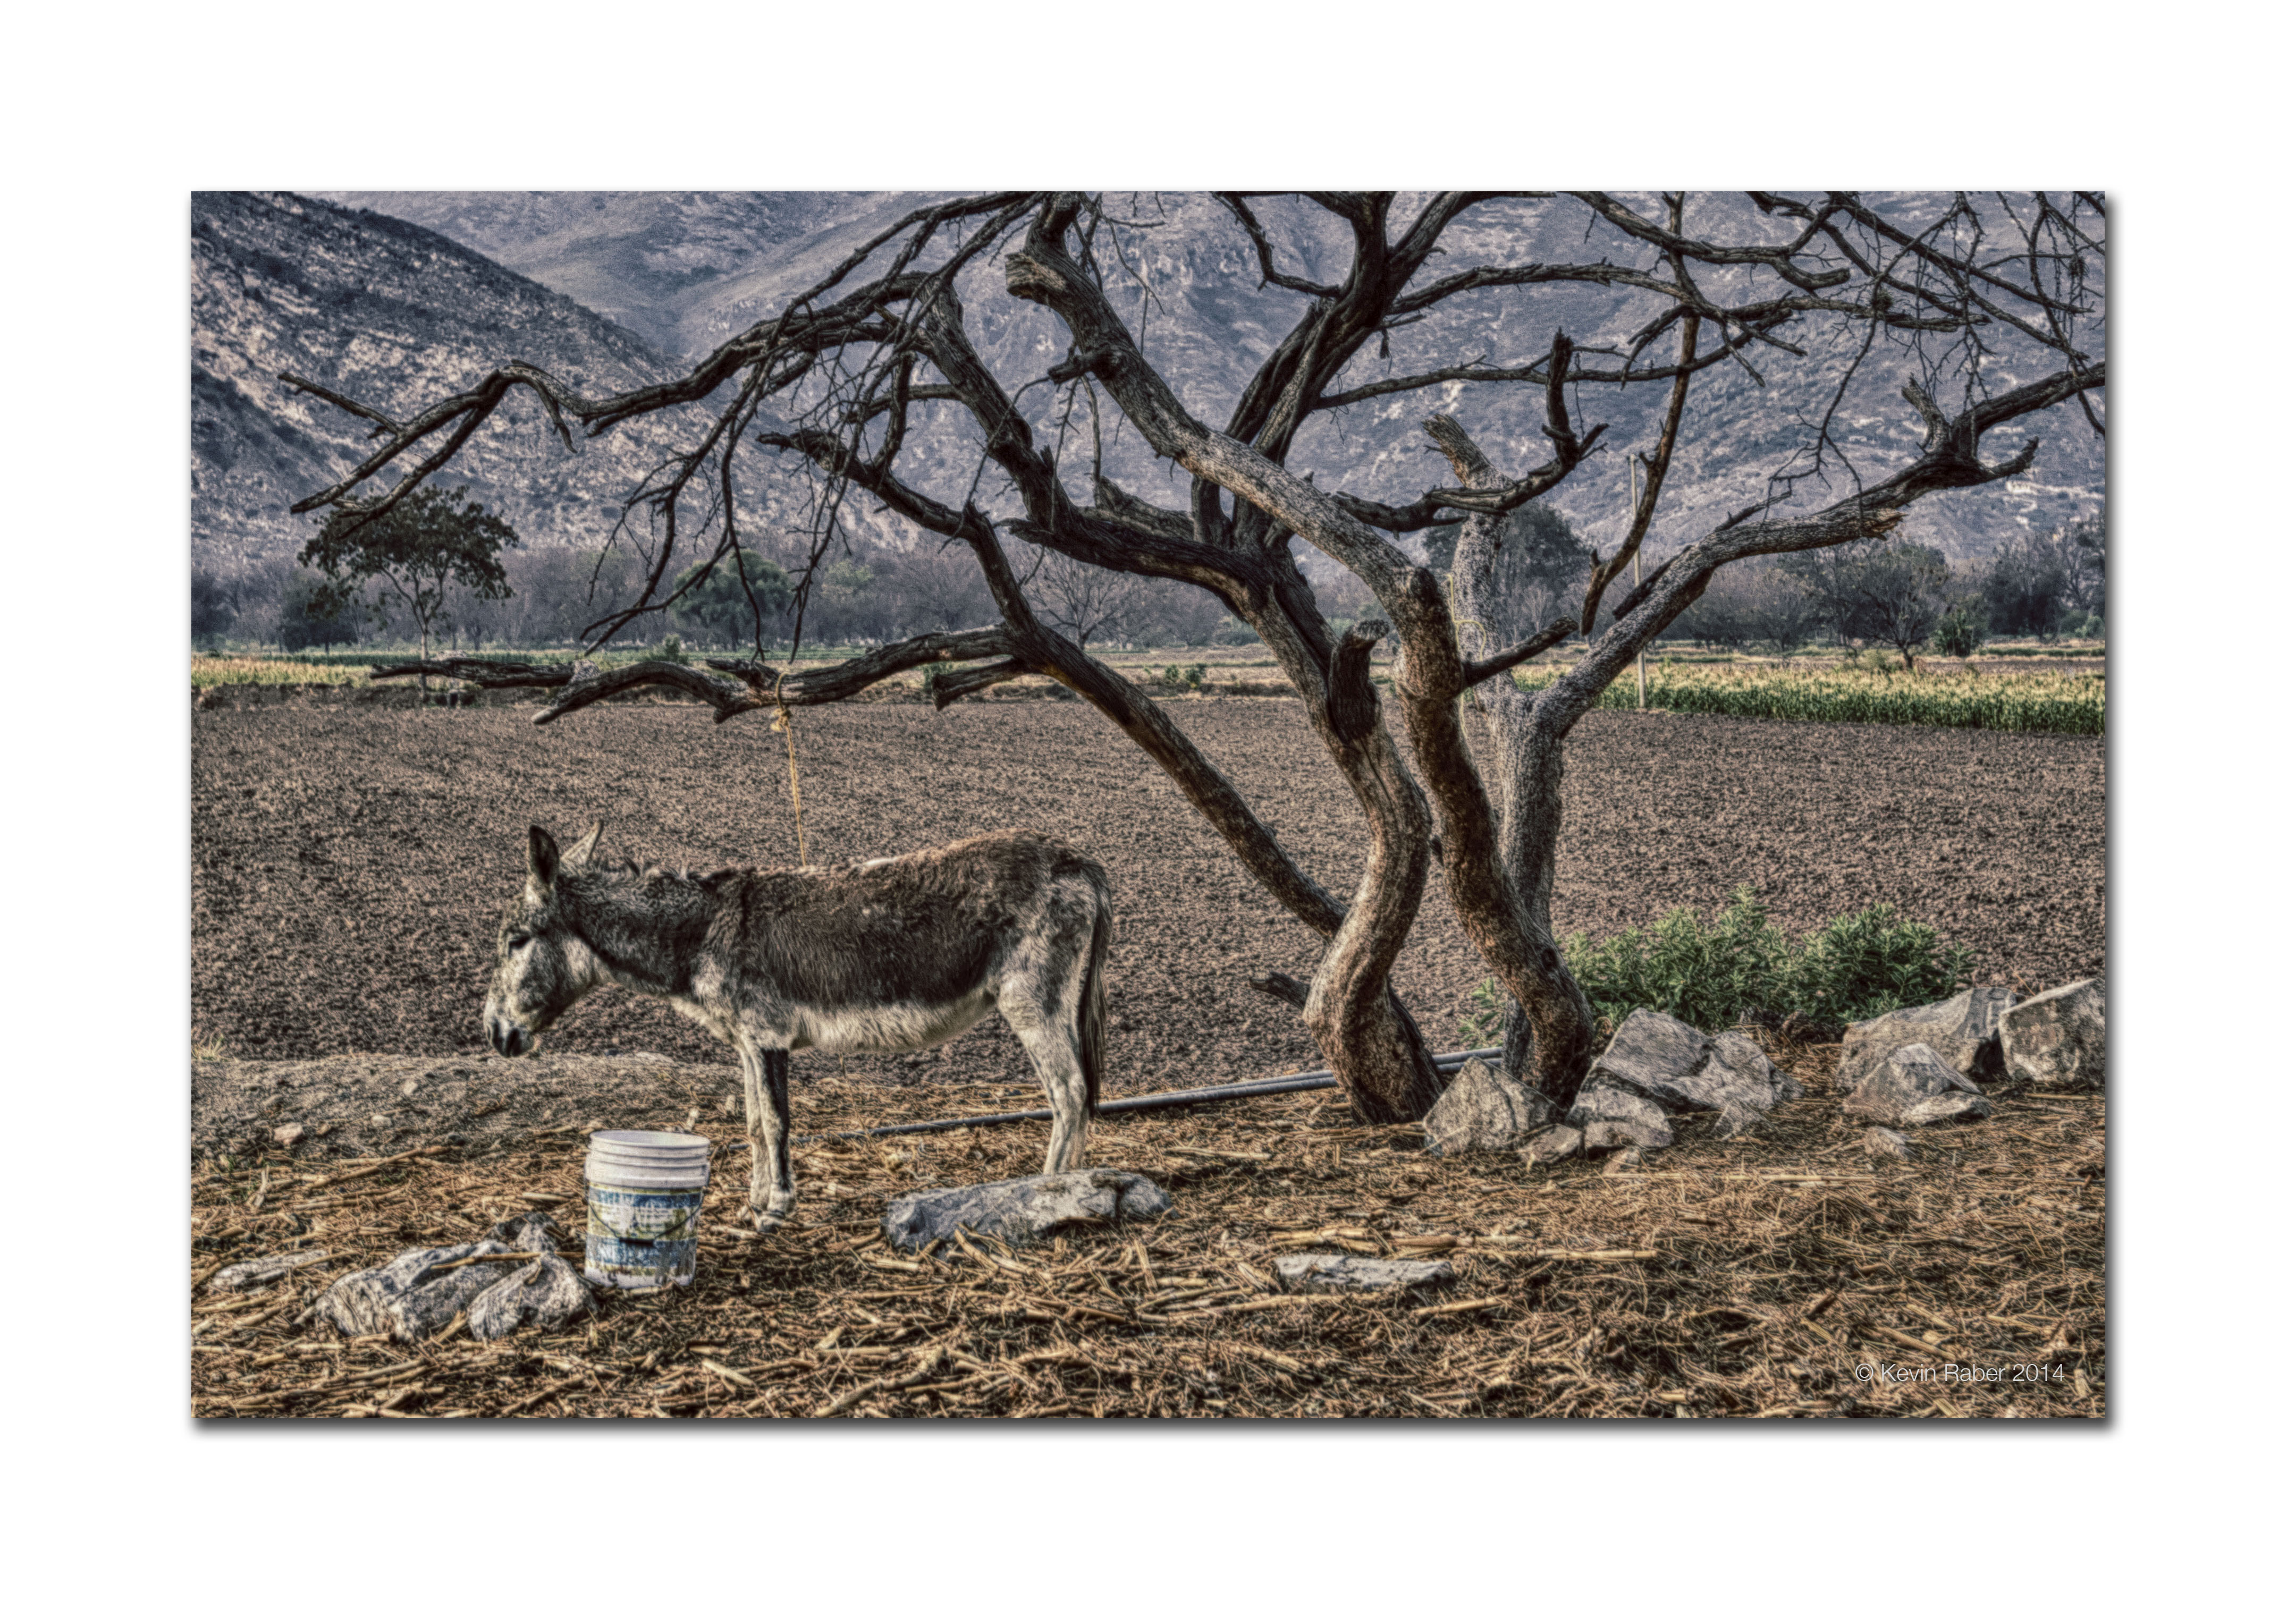 Donkey and Tree, Mexico